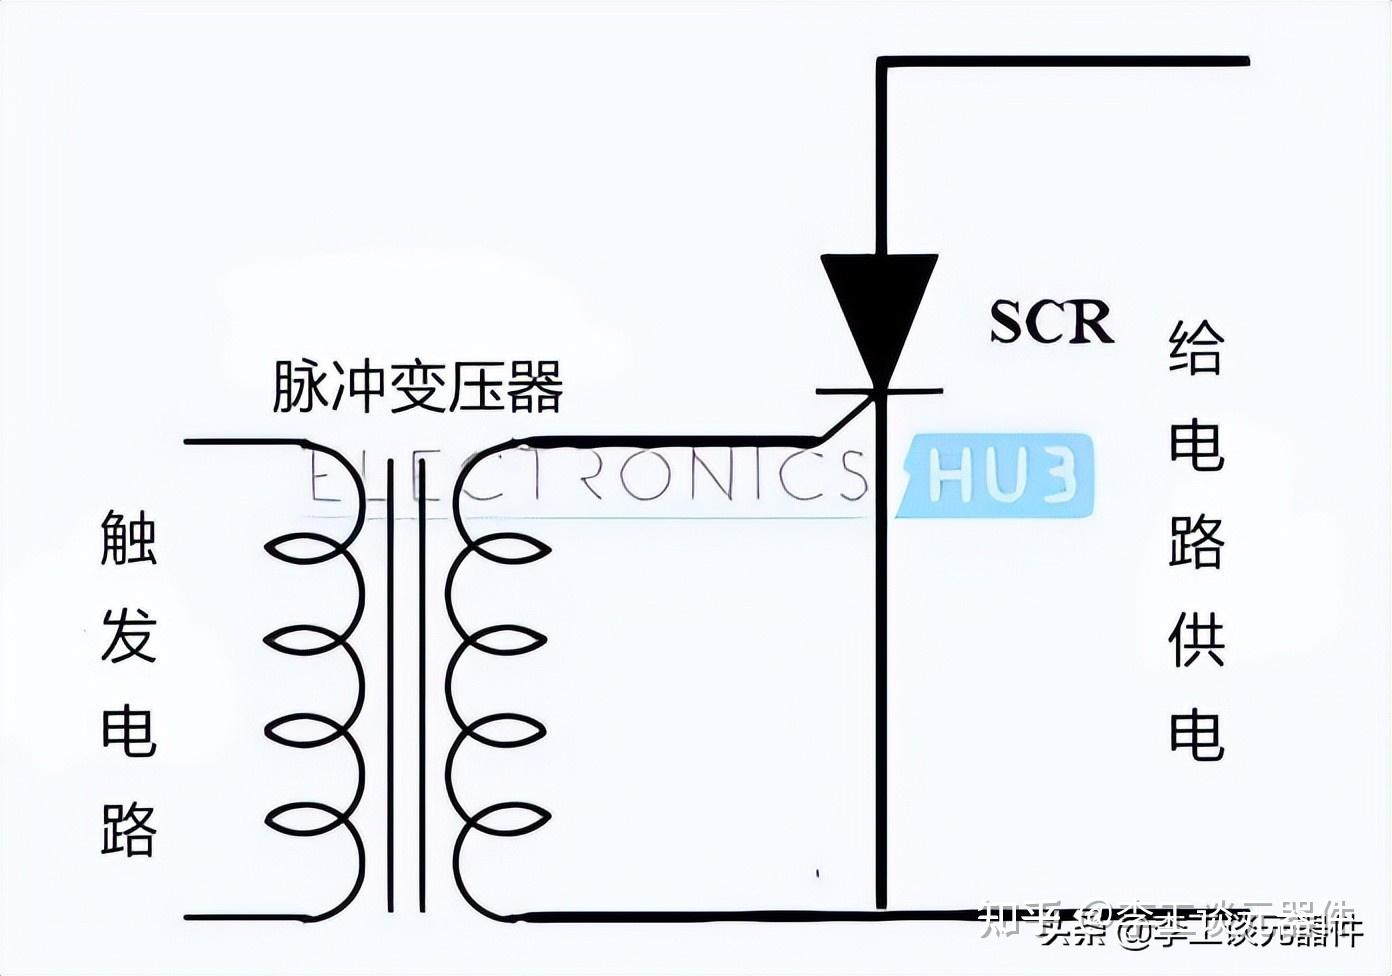 可控硅(scr)由来自主电源的相移交流电压触发,通过改变门信号的相位角